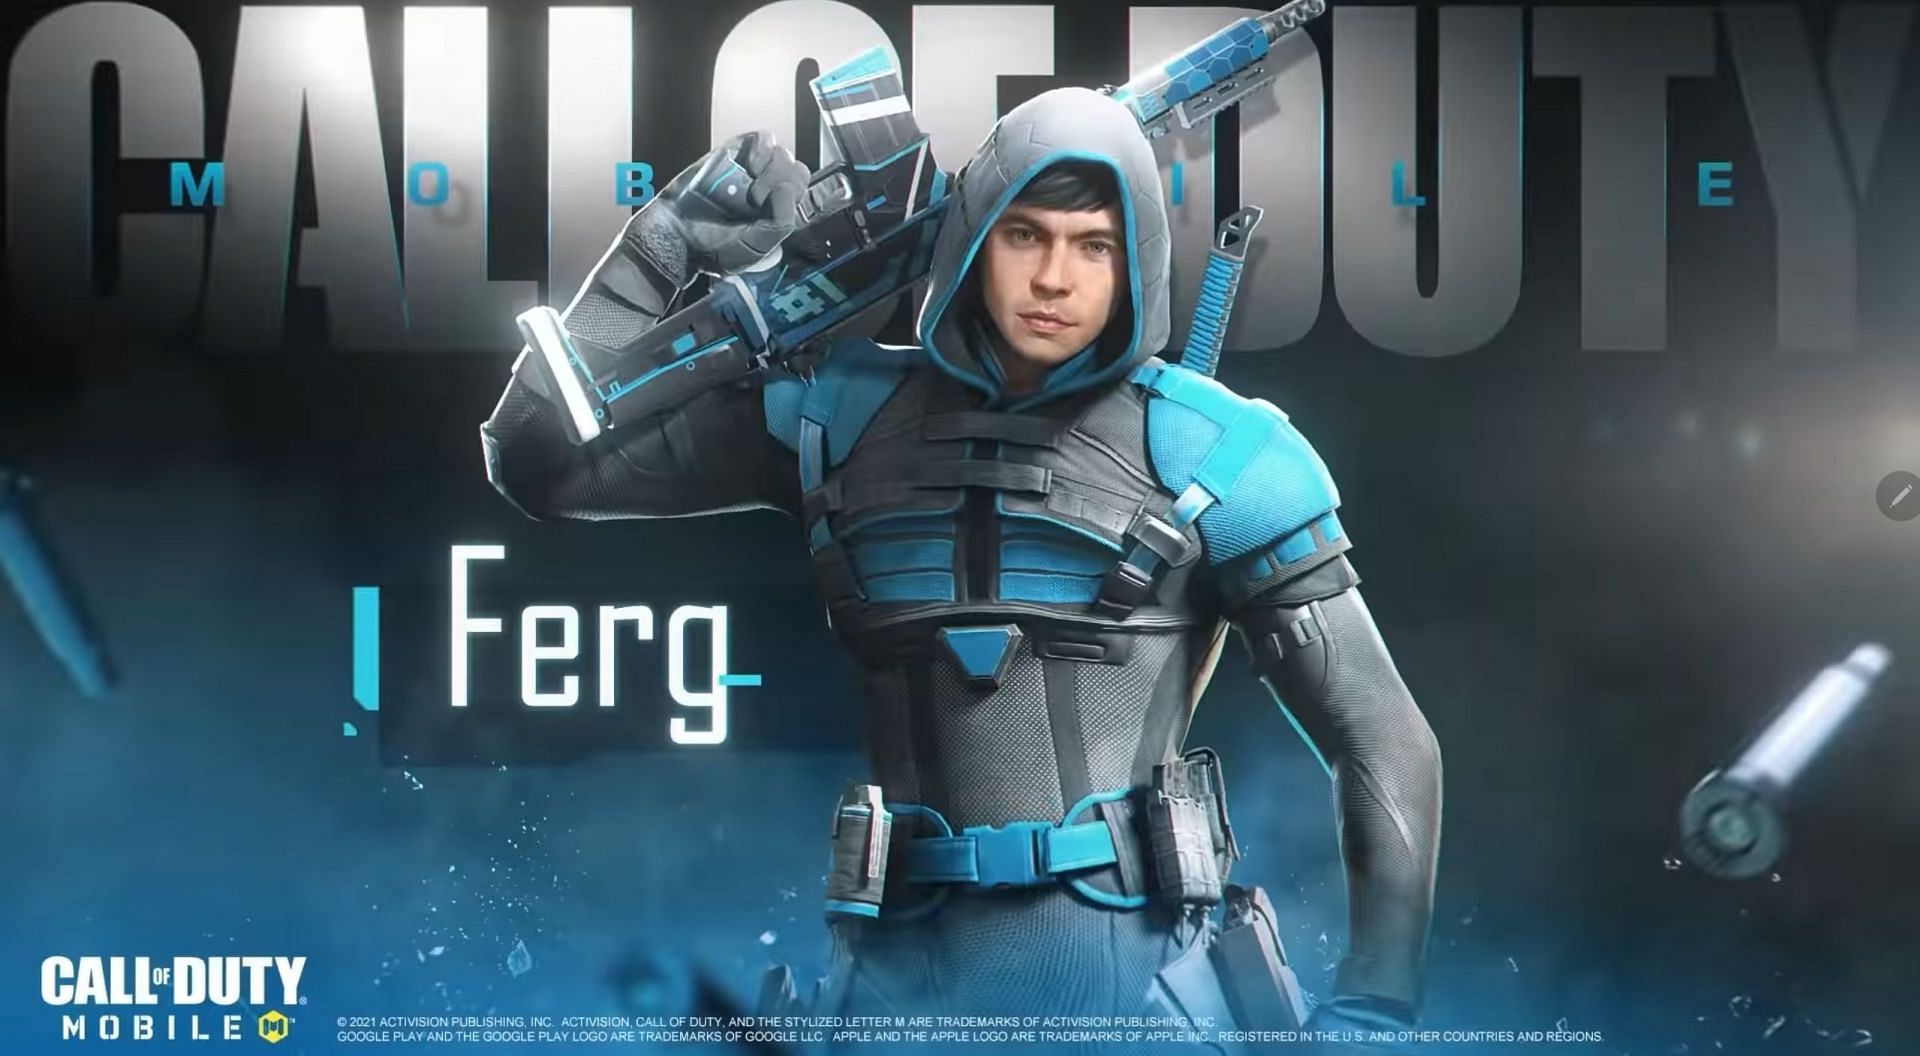 Ferg لديه شخصيته الخاصة في اللعبة ولكن تم حذف حسابه من COD Mobile من قبل السلطات (الصورة عبر Activision)